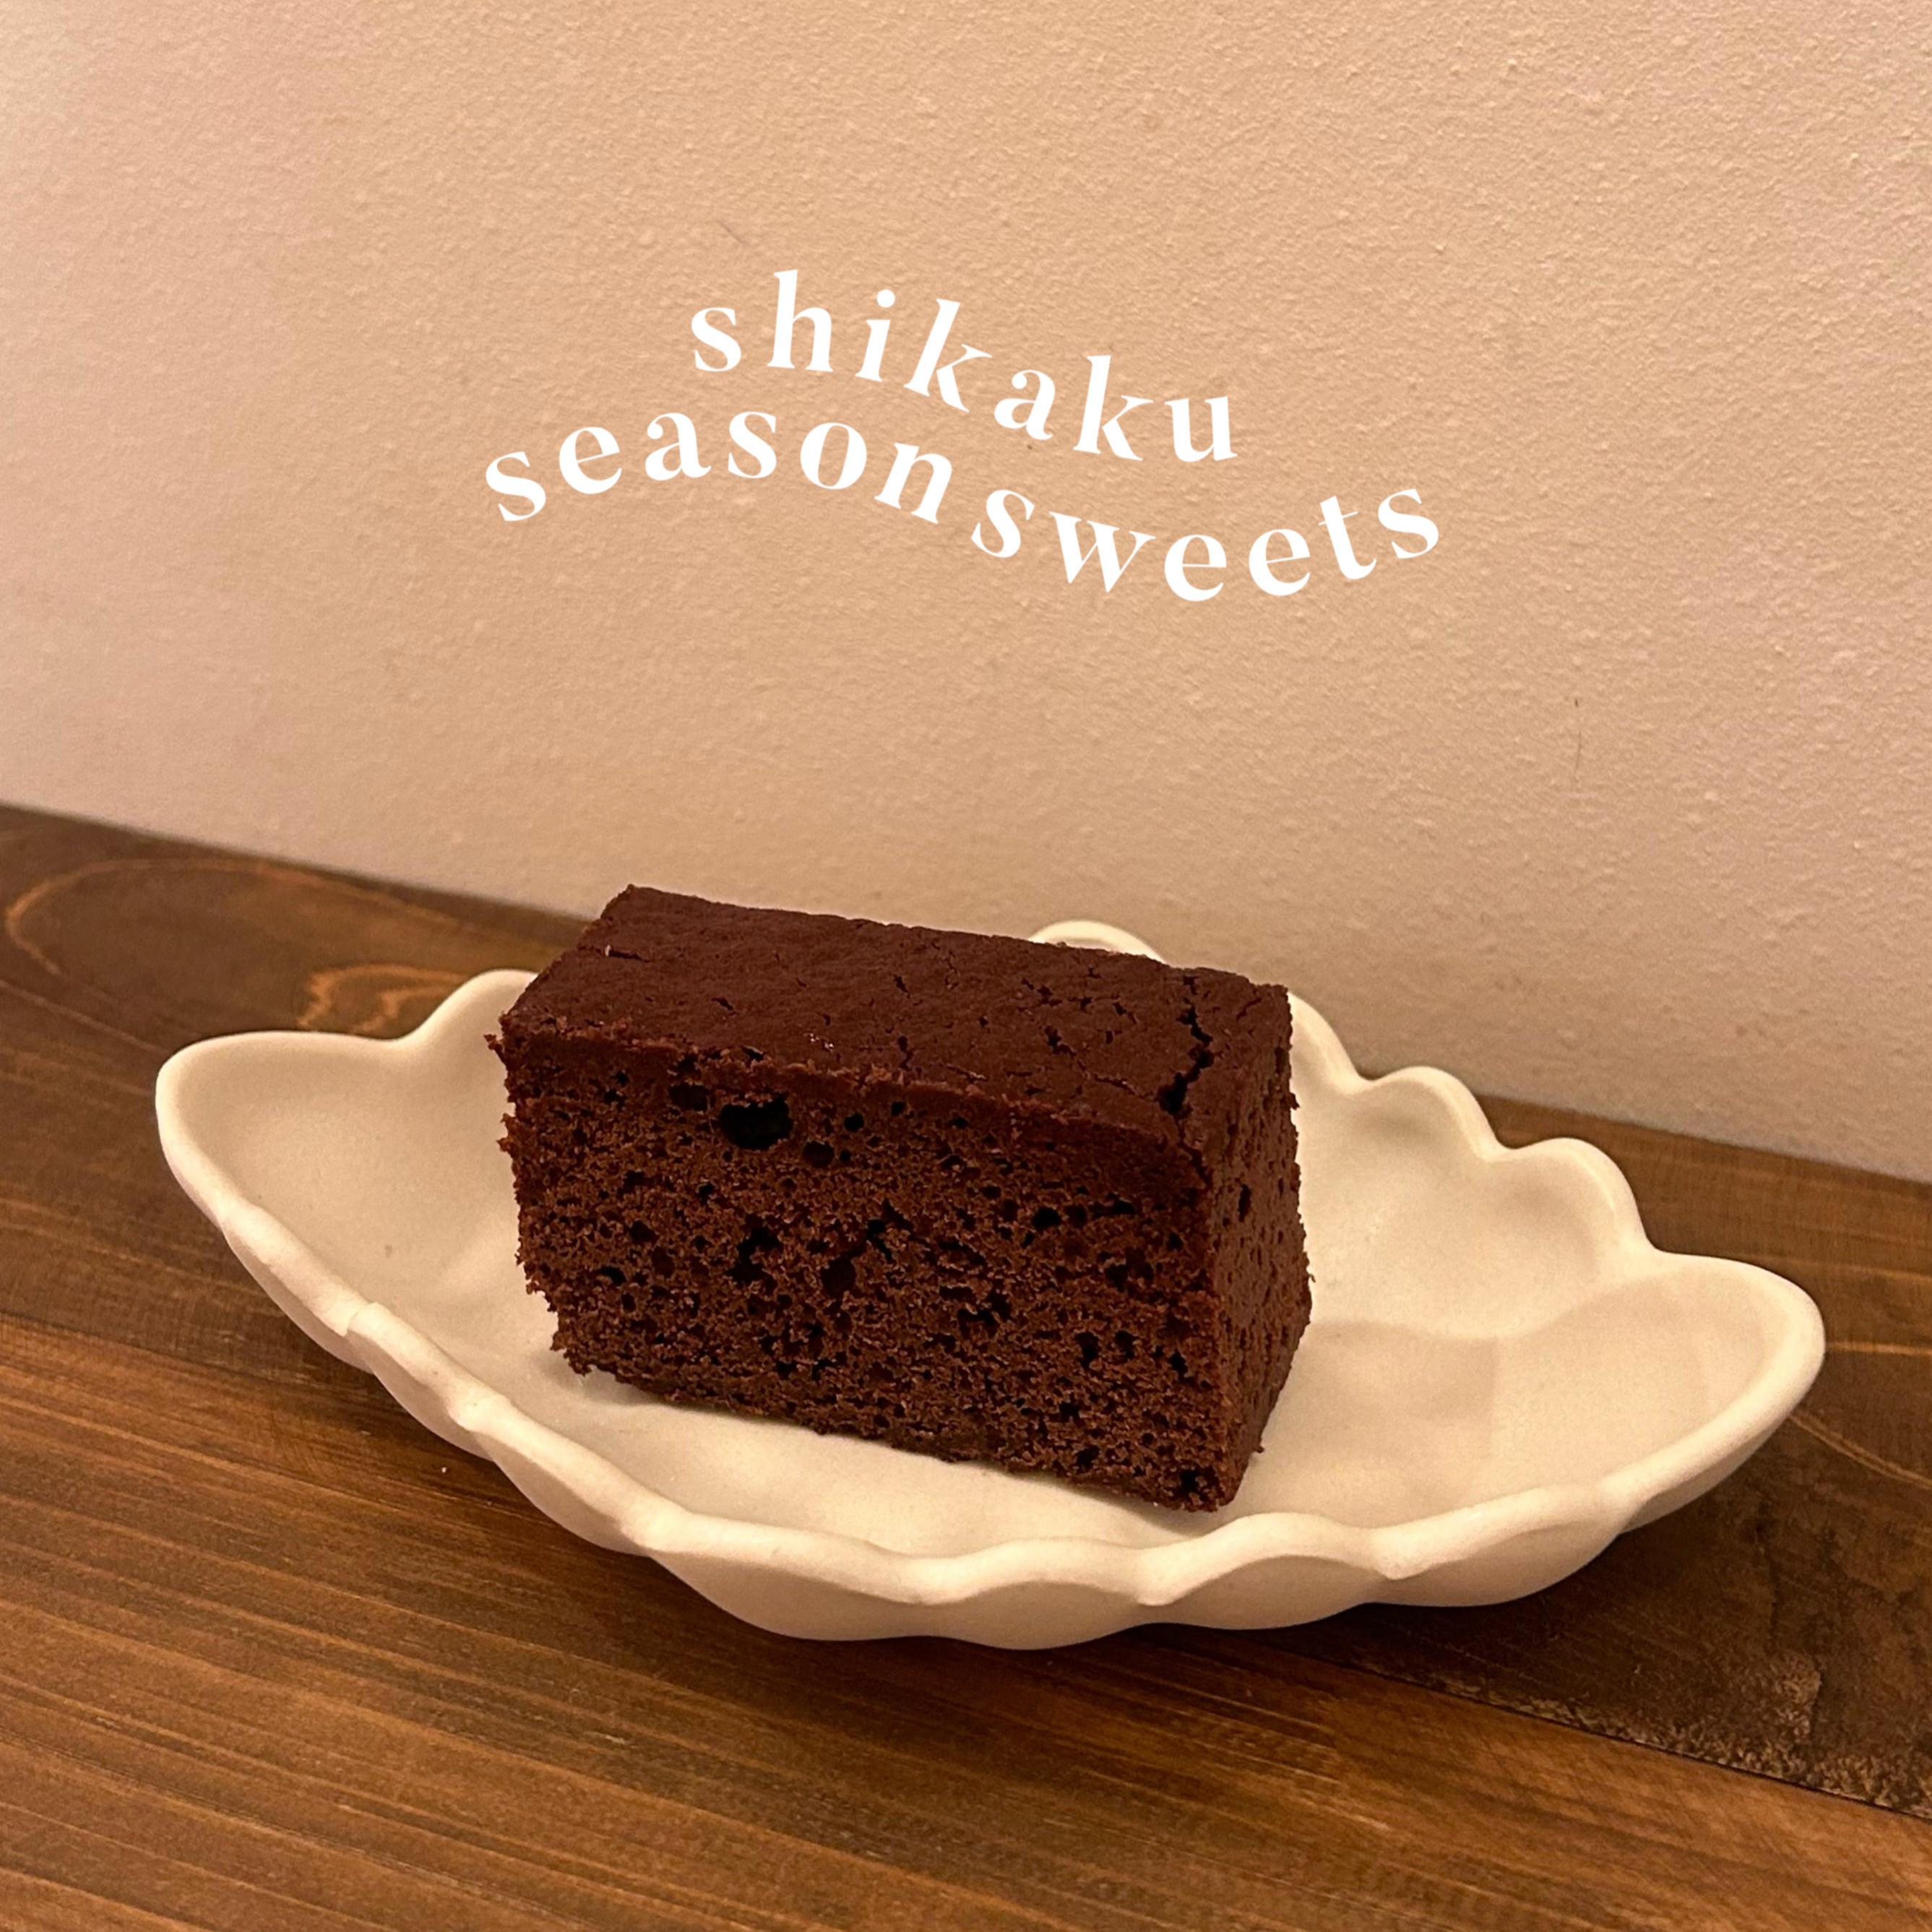 【季節のお菓子】チョコレートケーキの販売がはじまりました!